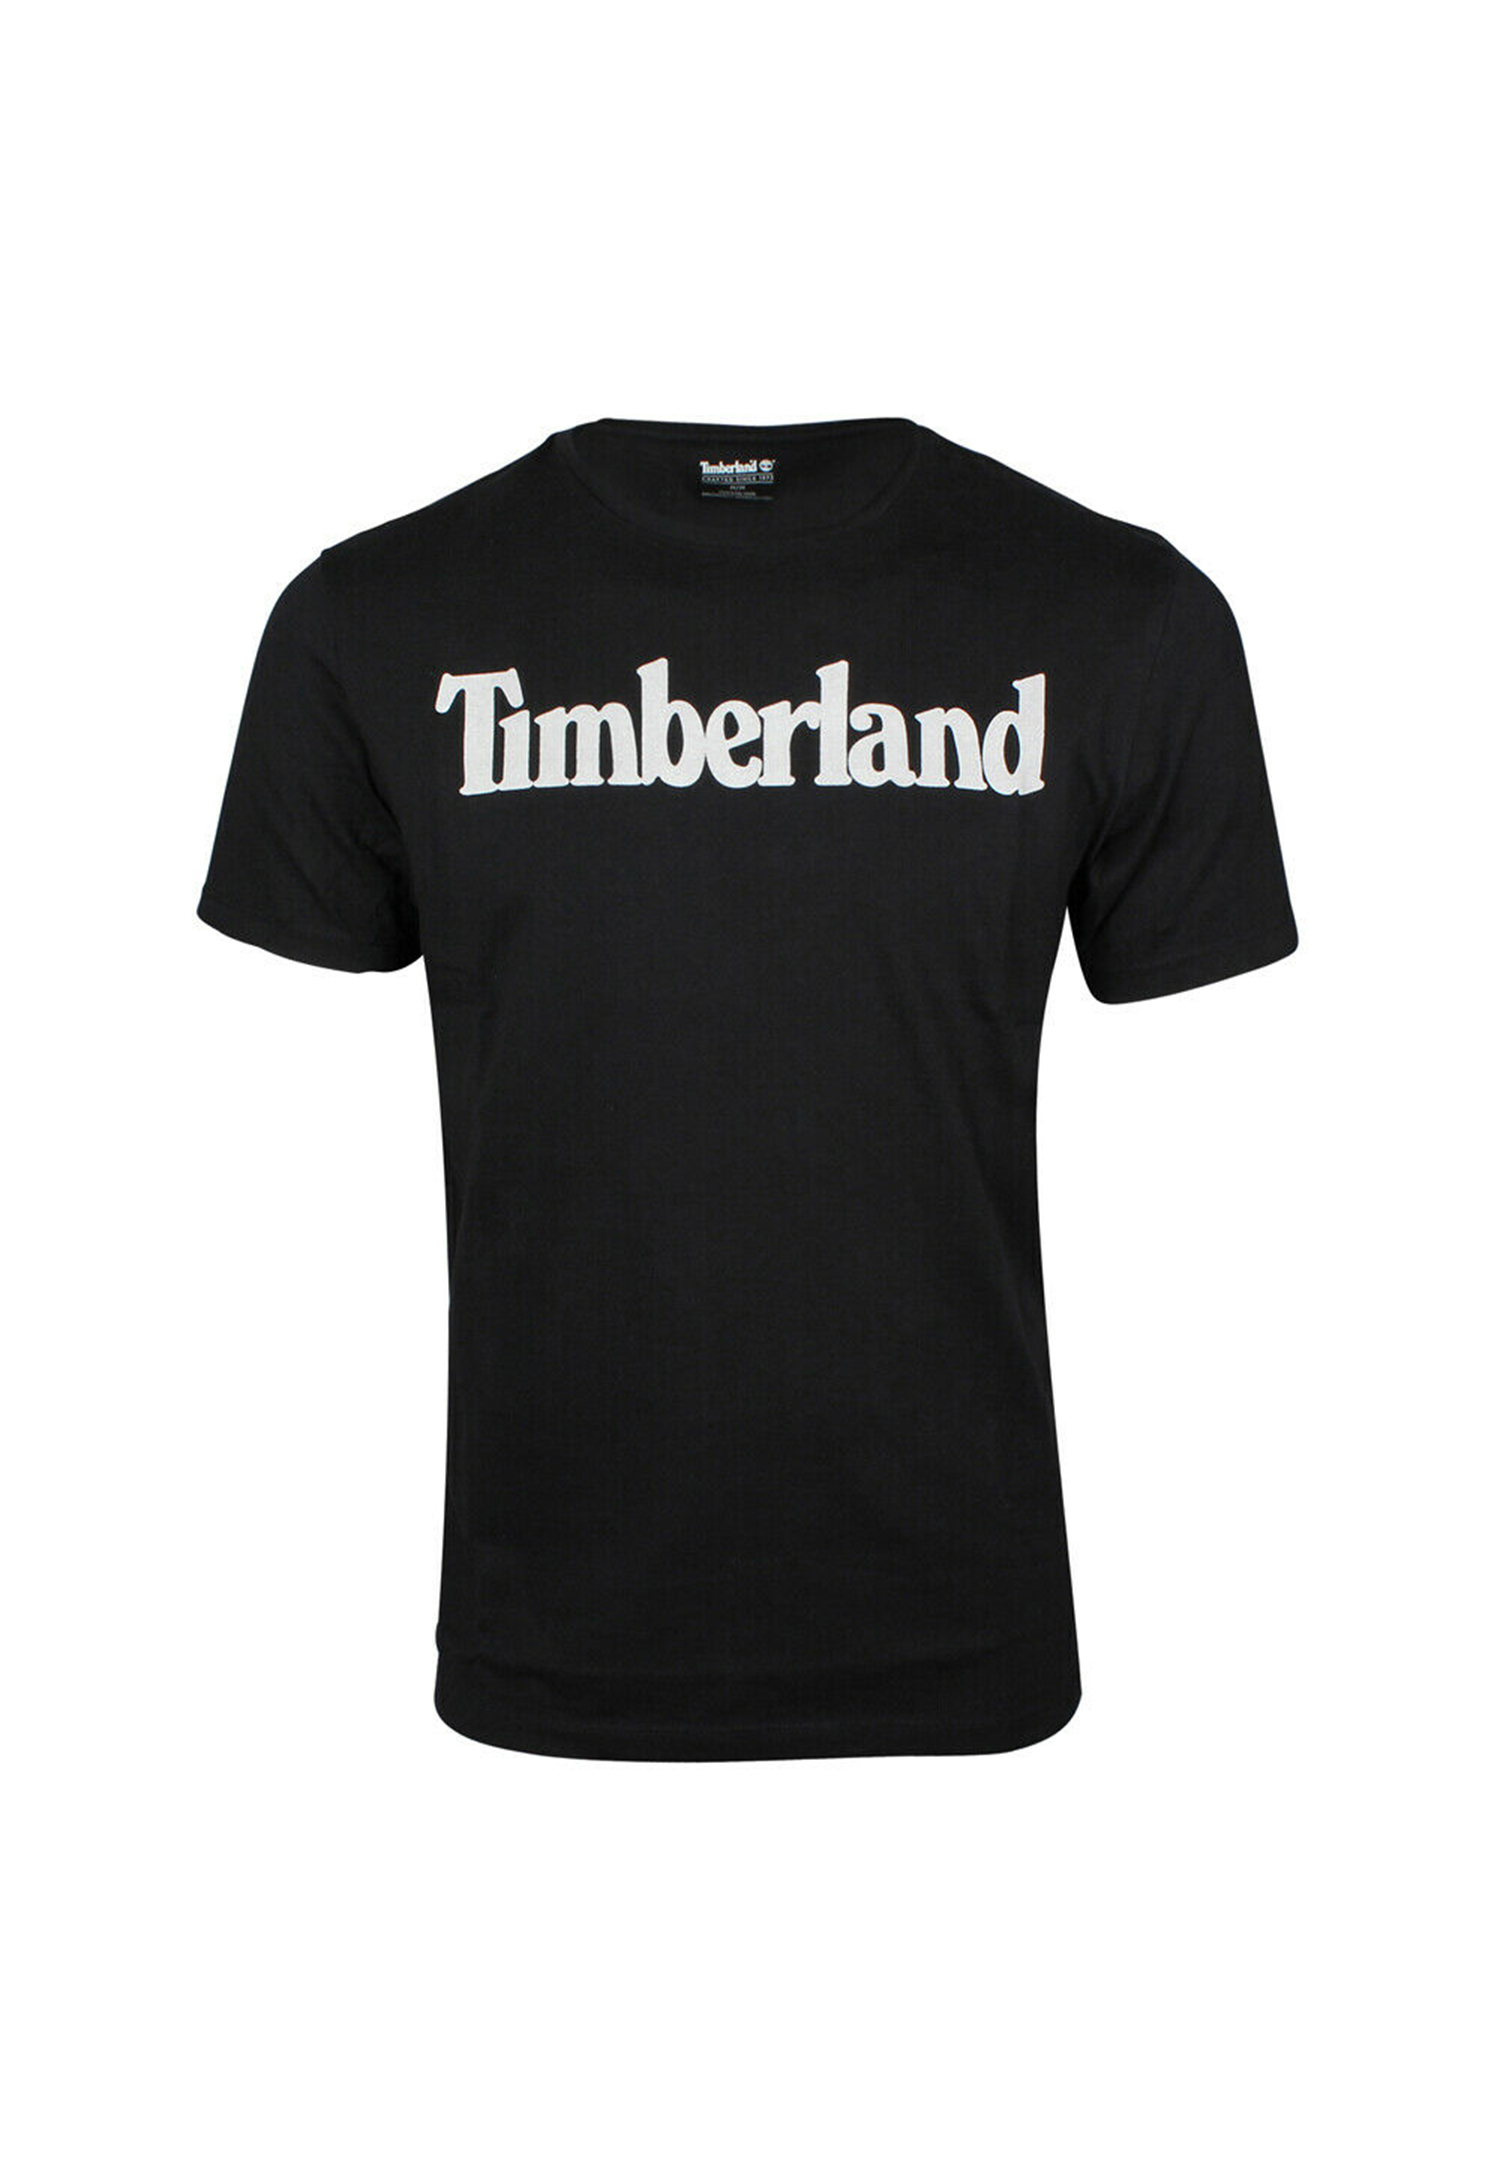 Timberland TFO SS Linear Tee Herren T-Shirt Shirt TB0A2BRN 001 schwarz